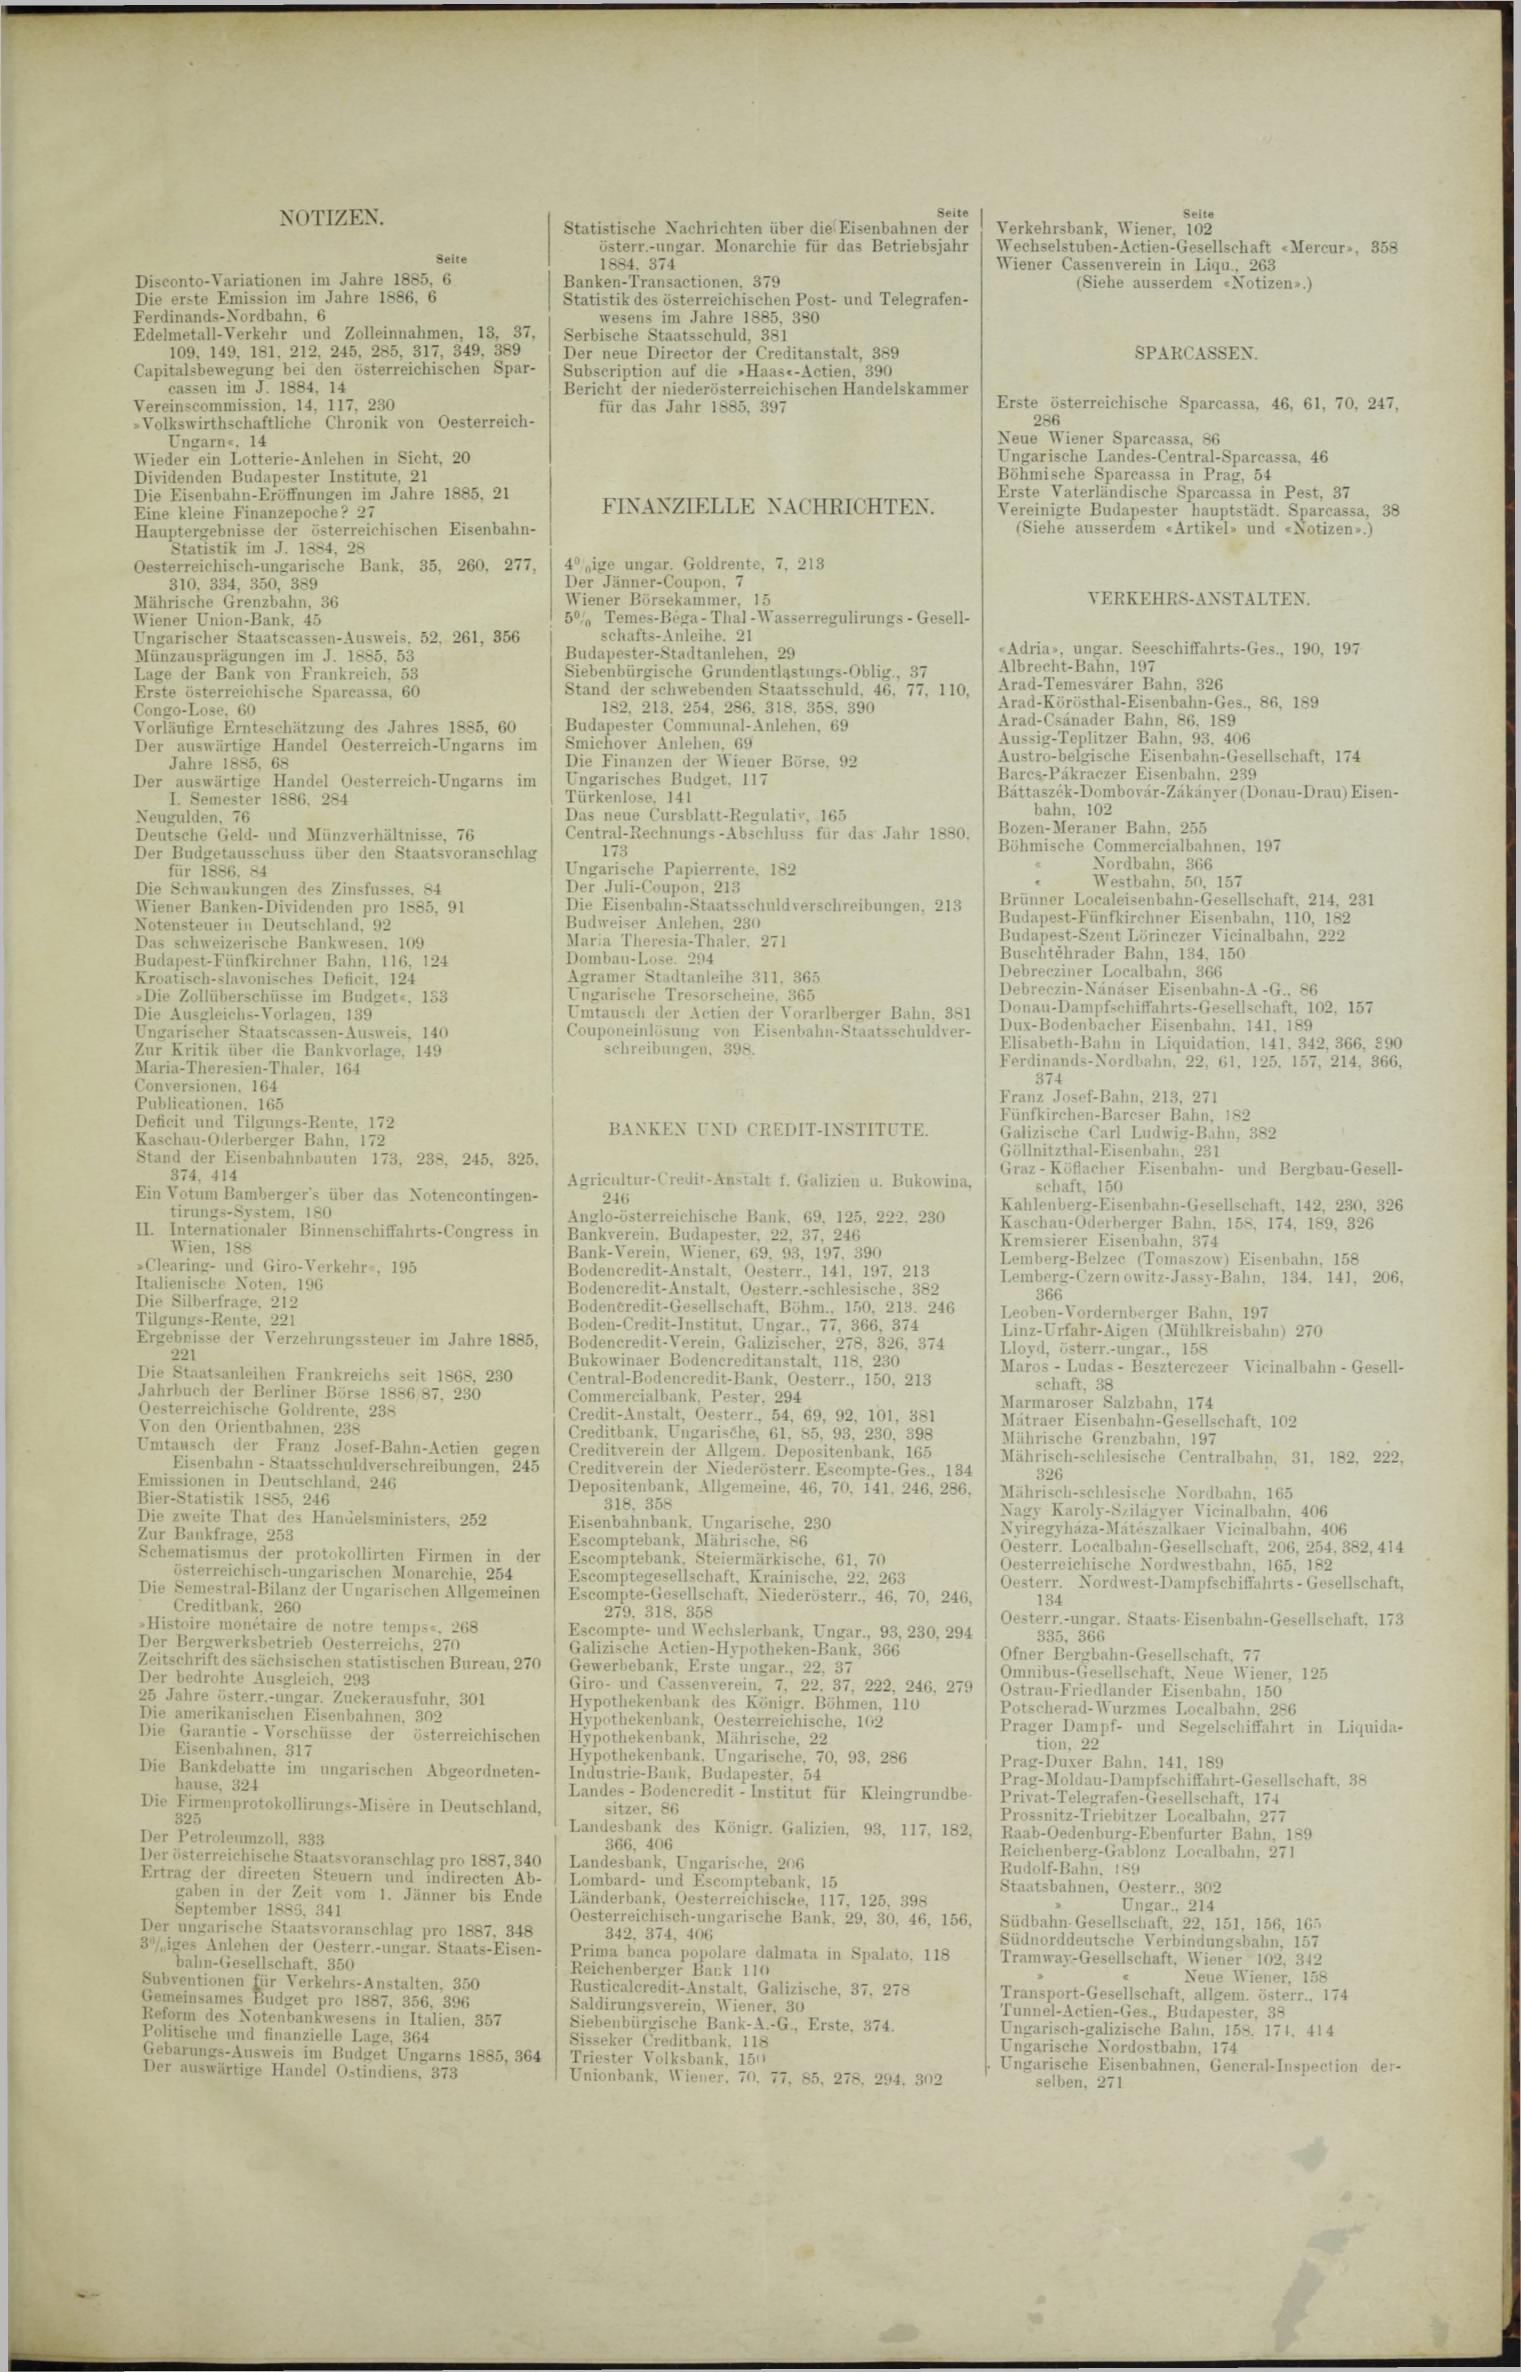 Der Tresor 28.10.1886 - Seite 11